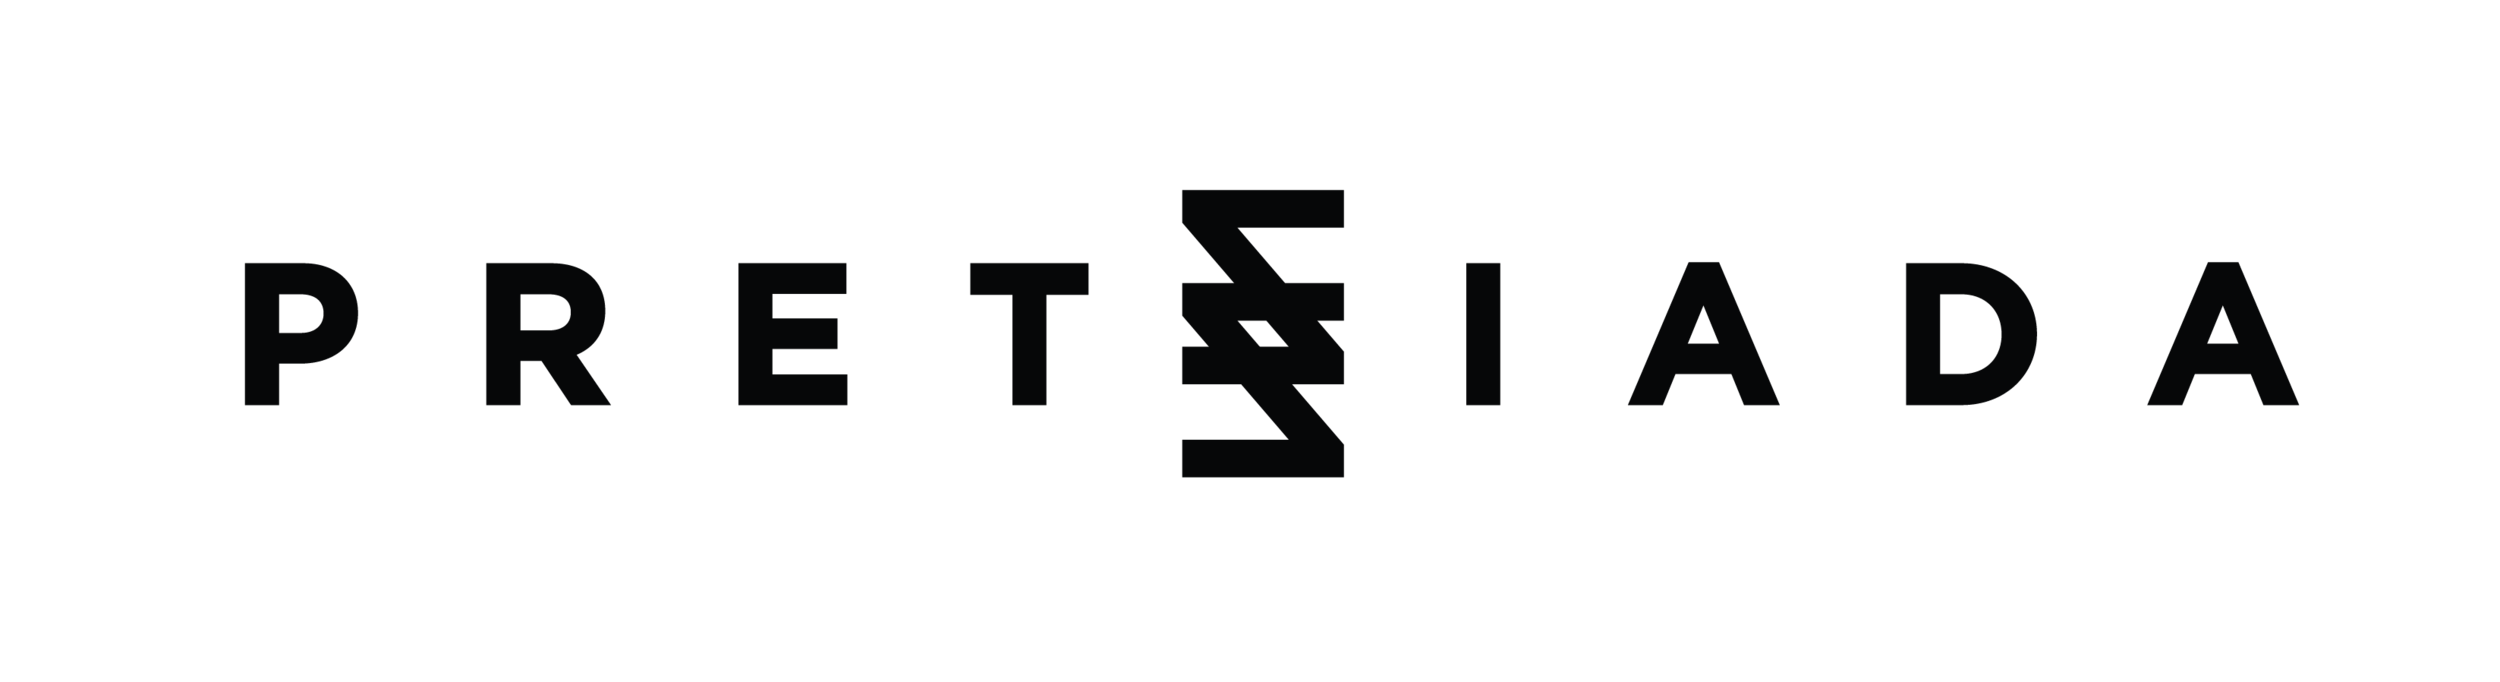 Pretziada Logo (1).png